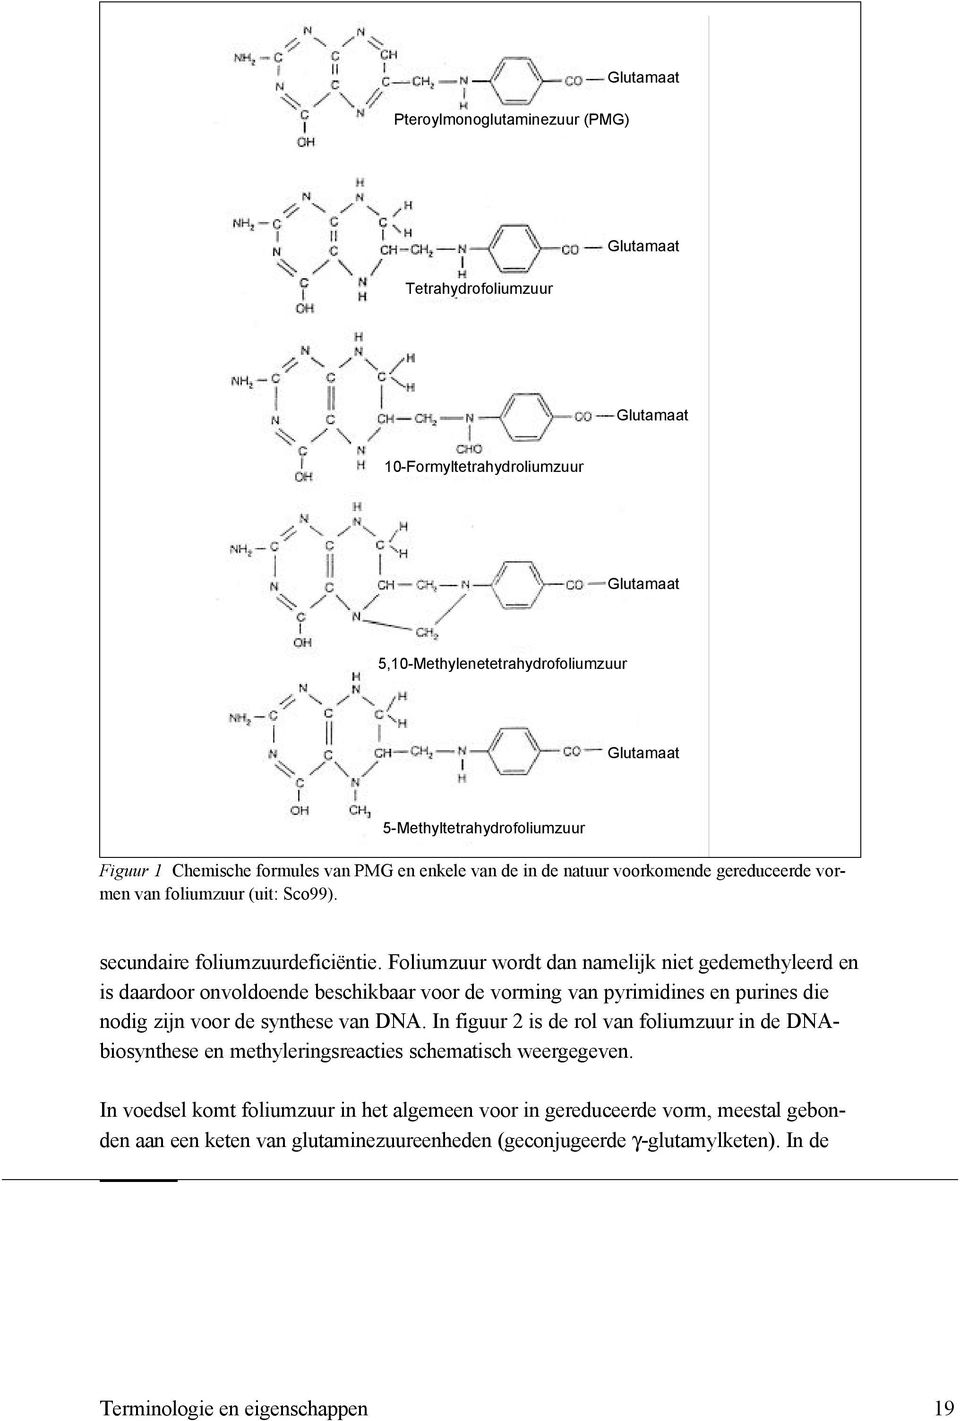 Foliumzuur wordt dan namelijk niet gedemethyleerd en is daardoor onvoldoende beschikbaar voor de vorming van pyrimidines en purines die nodig zijn voor de synthese van DNA.